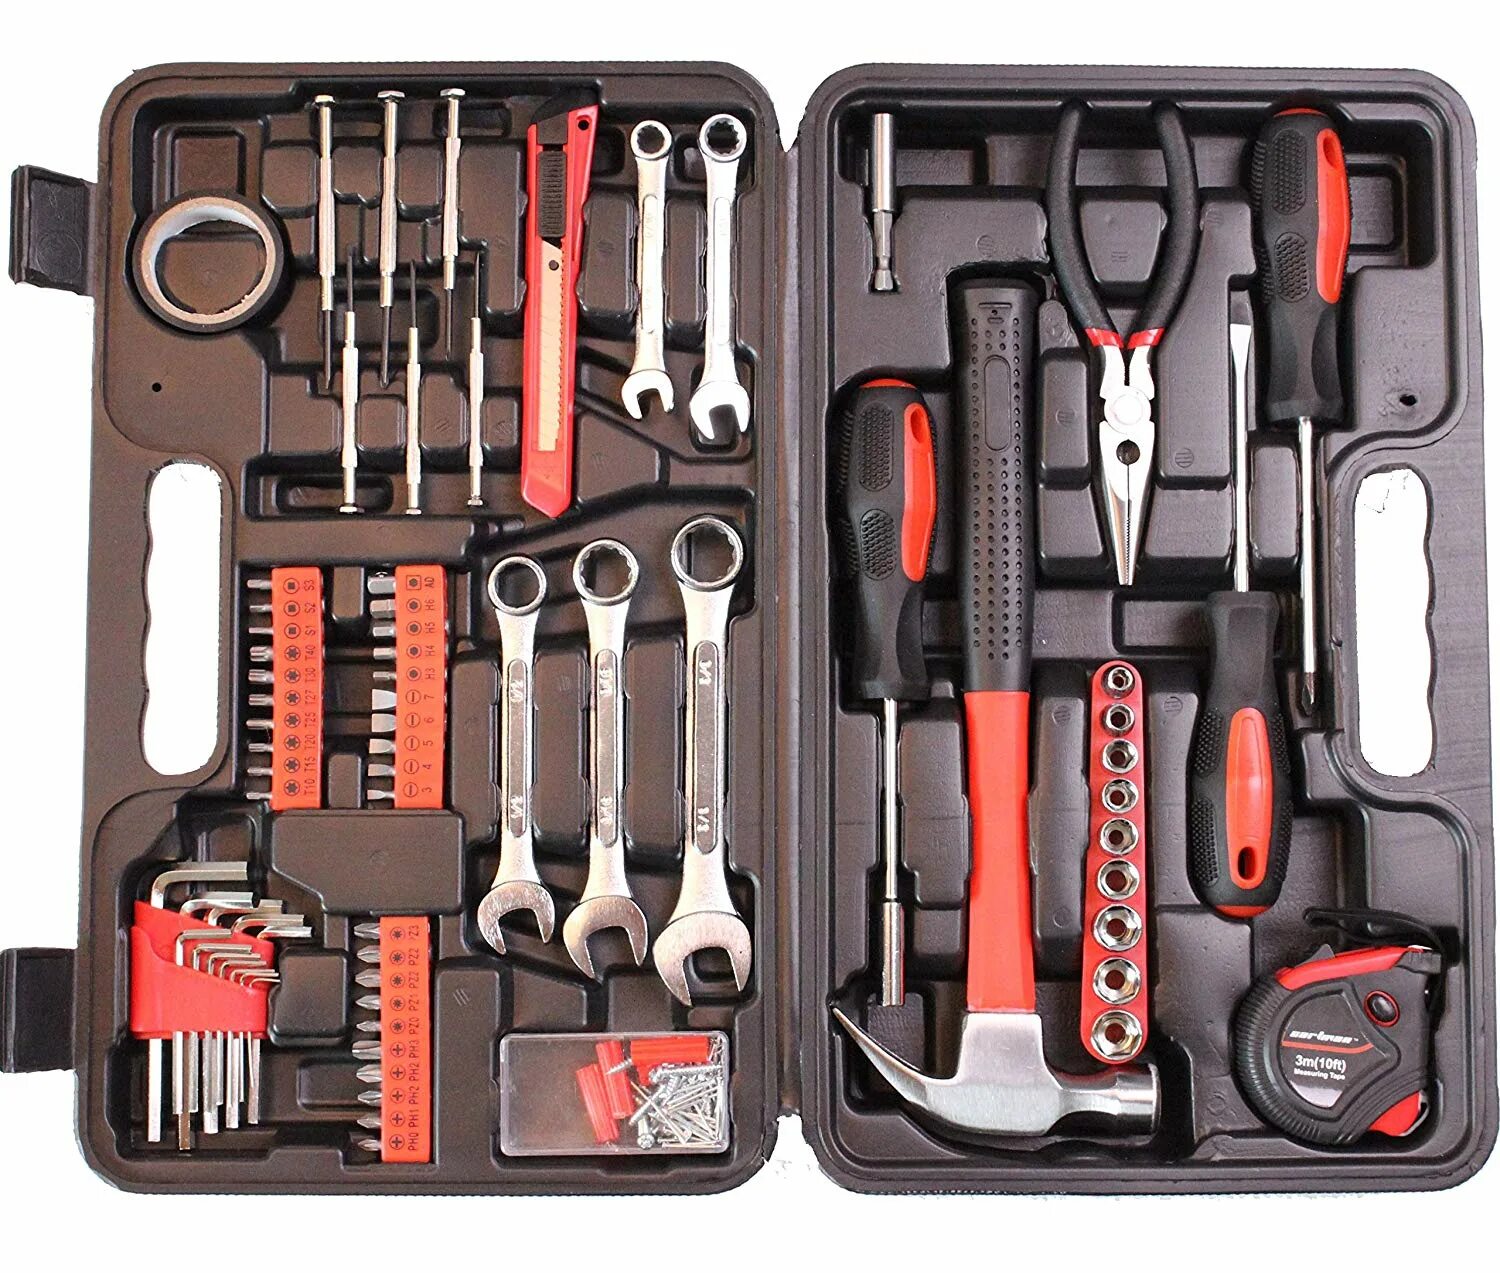 Набор инструментов Тоол сет. Комплект инструментов Tool Kit 15-20120. Набор инструментов (Tool Kit) 276275 Lincoln. Набор автомеханика и-148 м, большой.